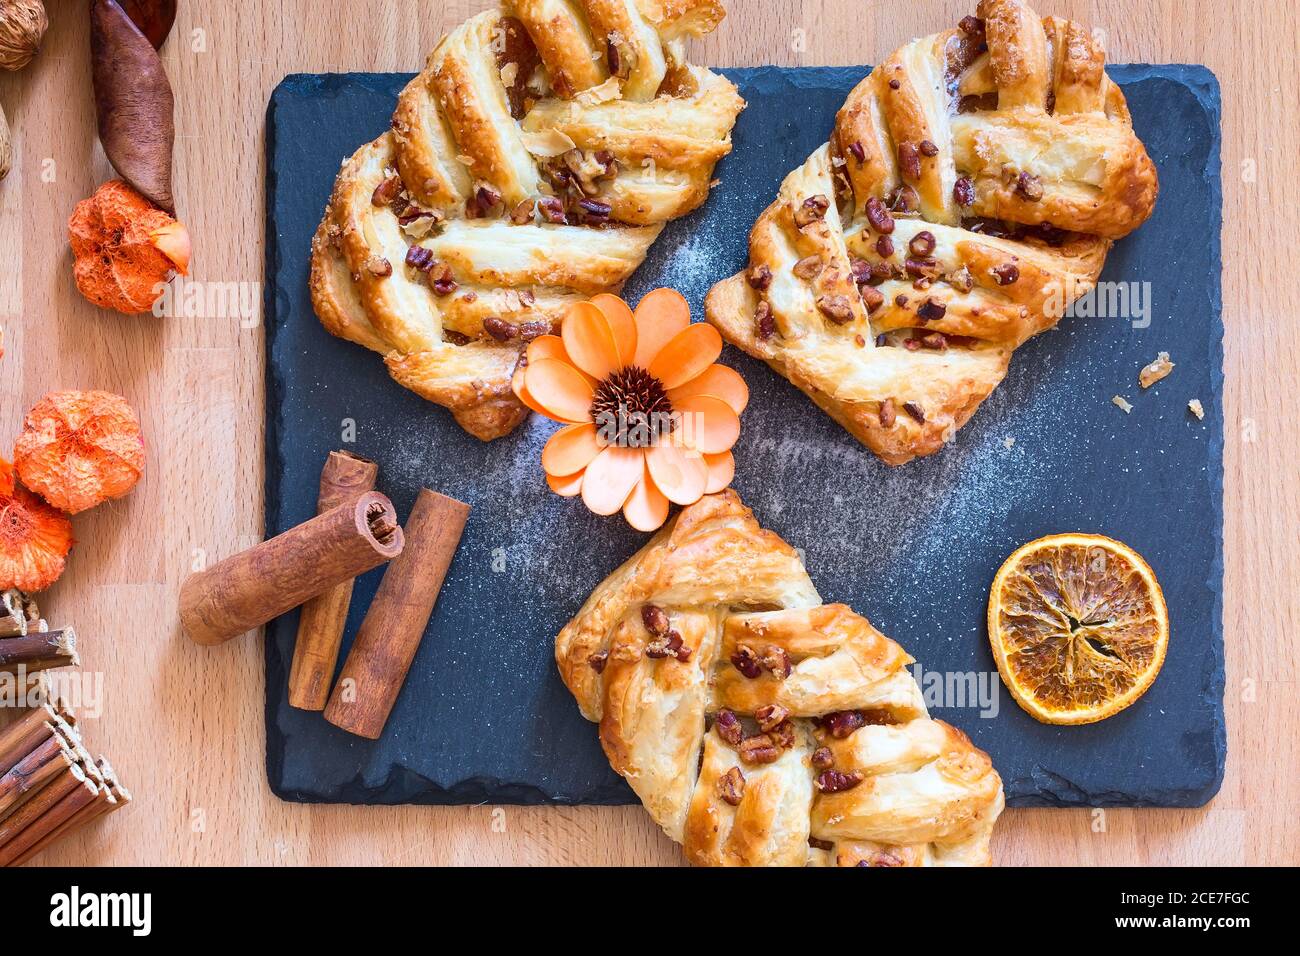 marple and pecan plait pastry Stock Photo